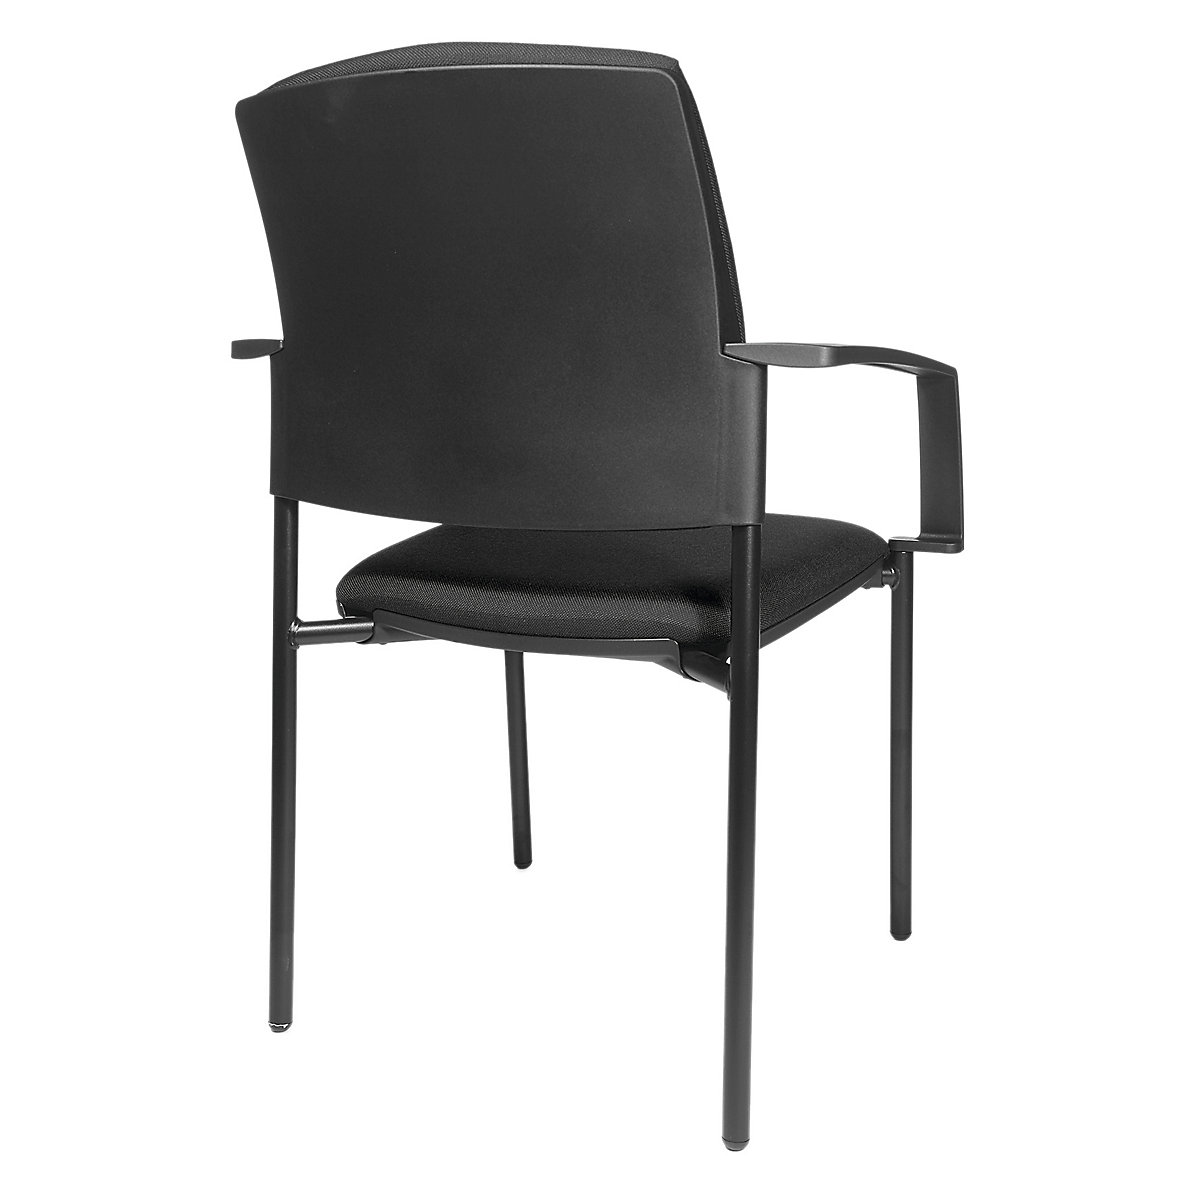 Čalúnená stohovacia stolička – Topstar, podstavec so štyrmi nohami, OJ 2 ks, podstavec čierna, čalúnenie čierna-7